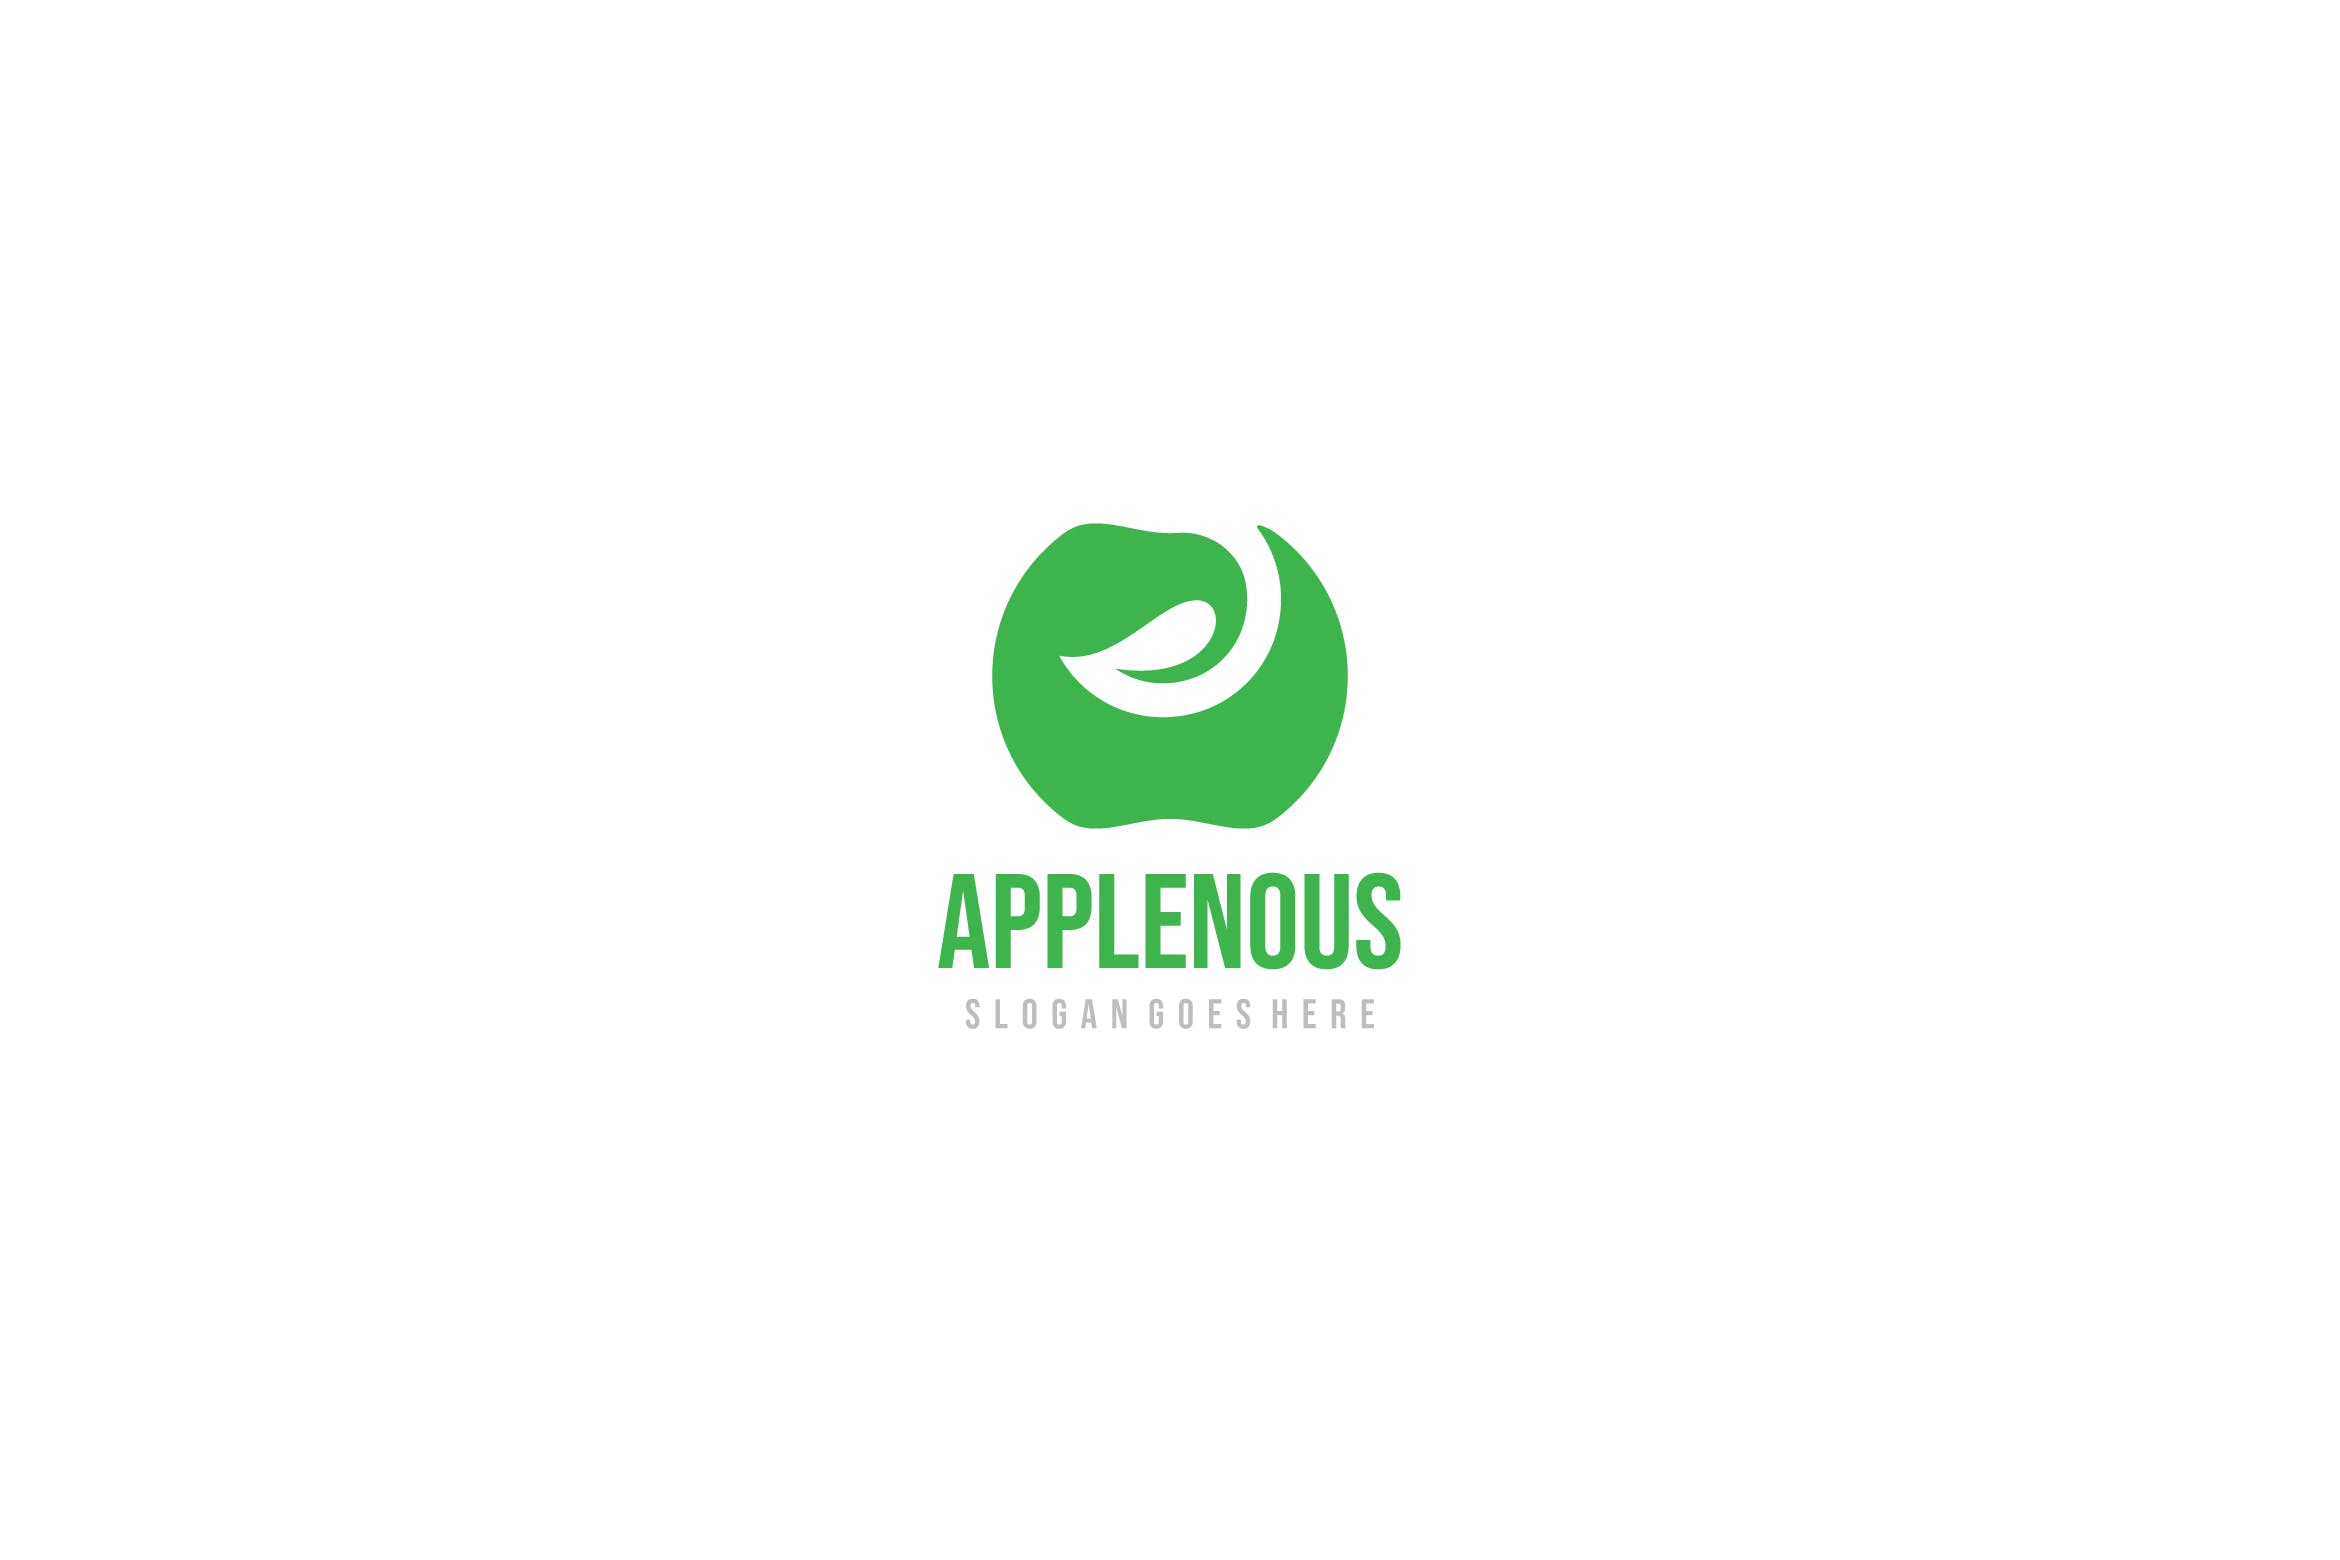 创意苹果图形Logo设计第一素材精选模板 Apple Logo插图